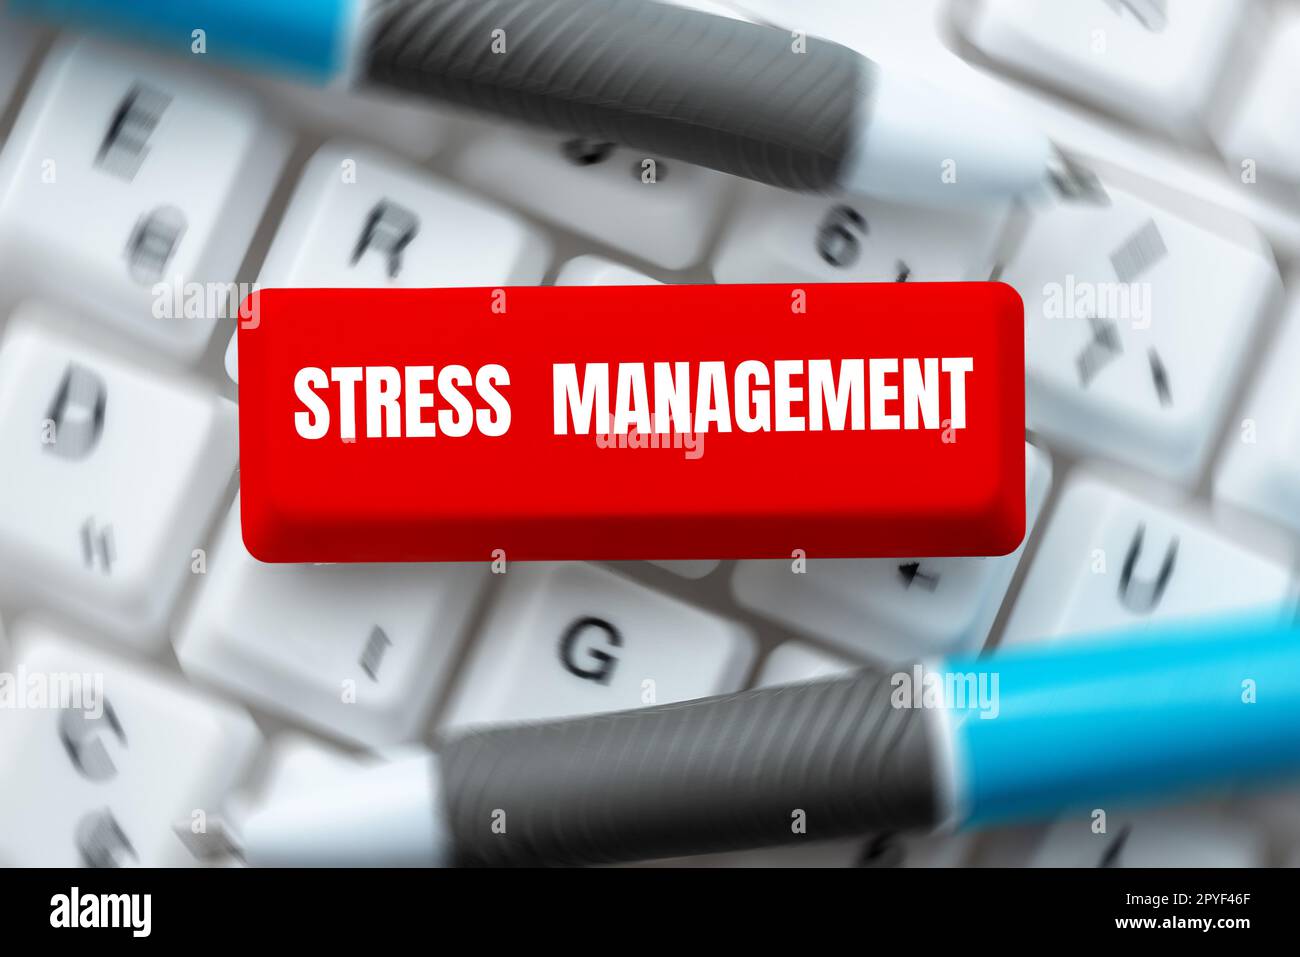 Testo che mostra la gestione dello stress inspiratorio. Business showcase imparare modi di comportarsi e pensare che riducono lo stress Foto Stock